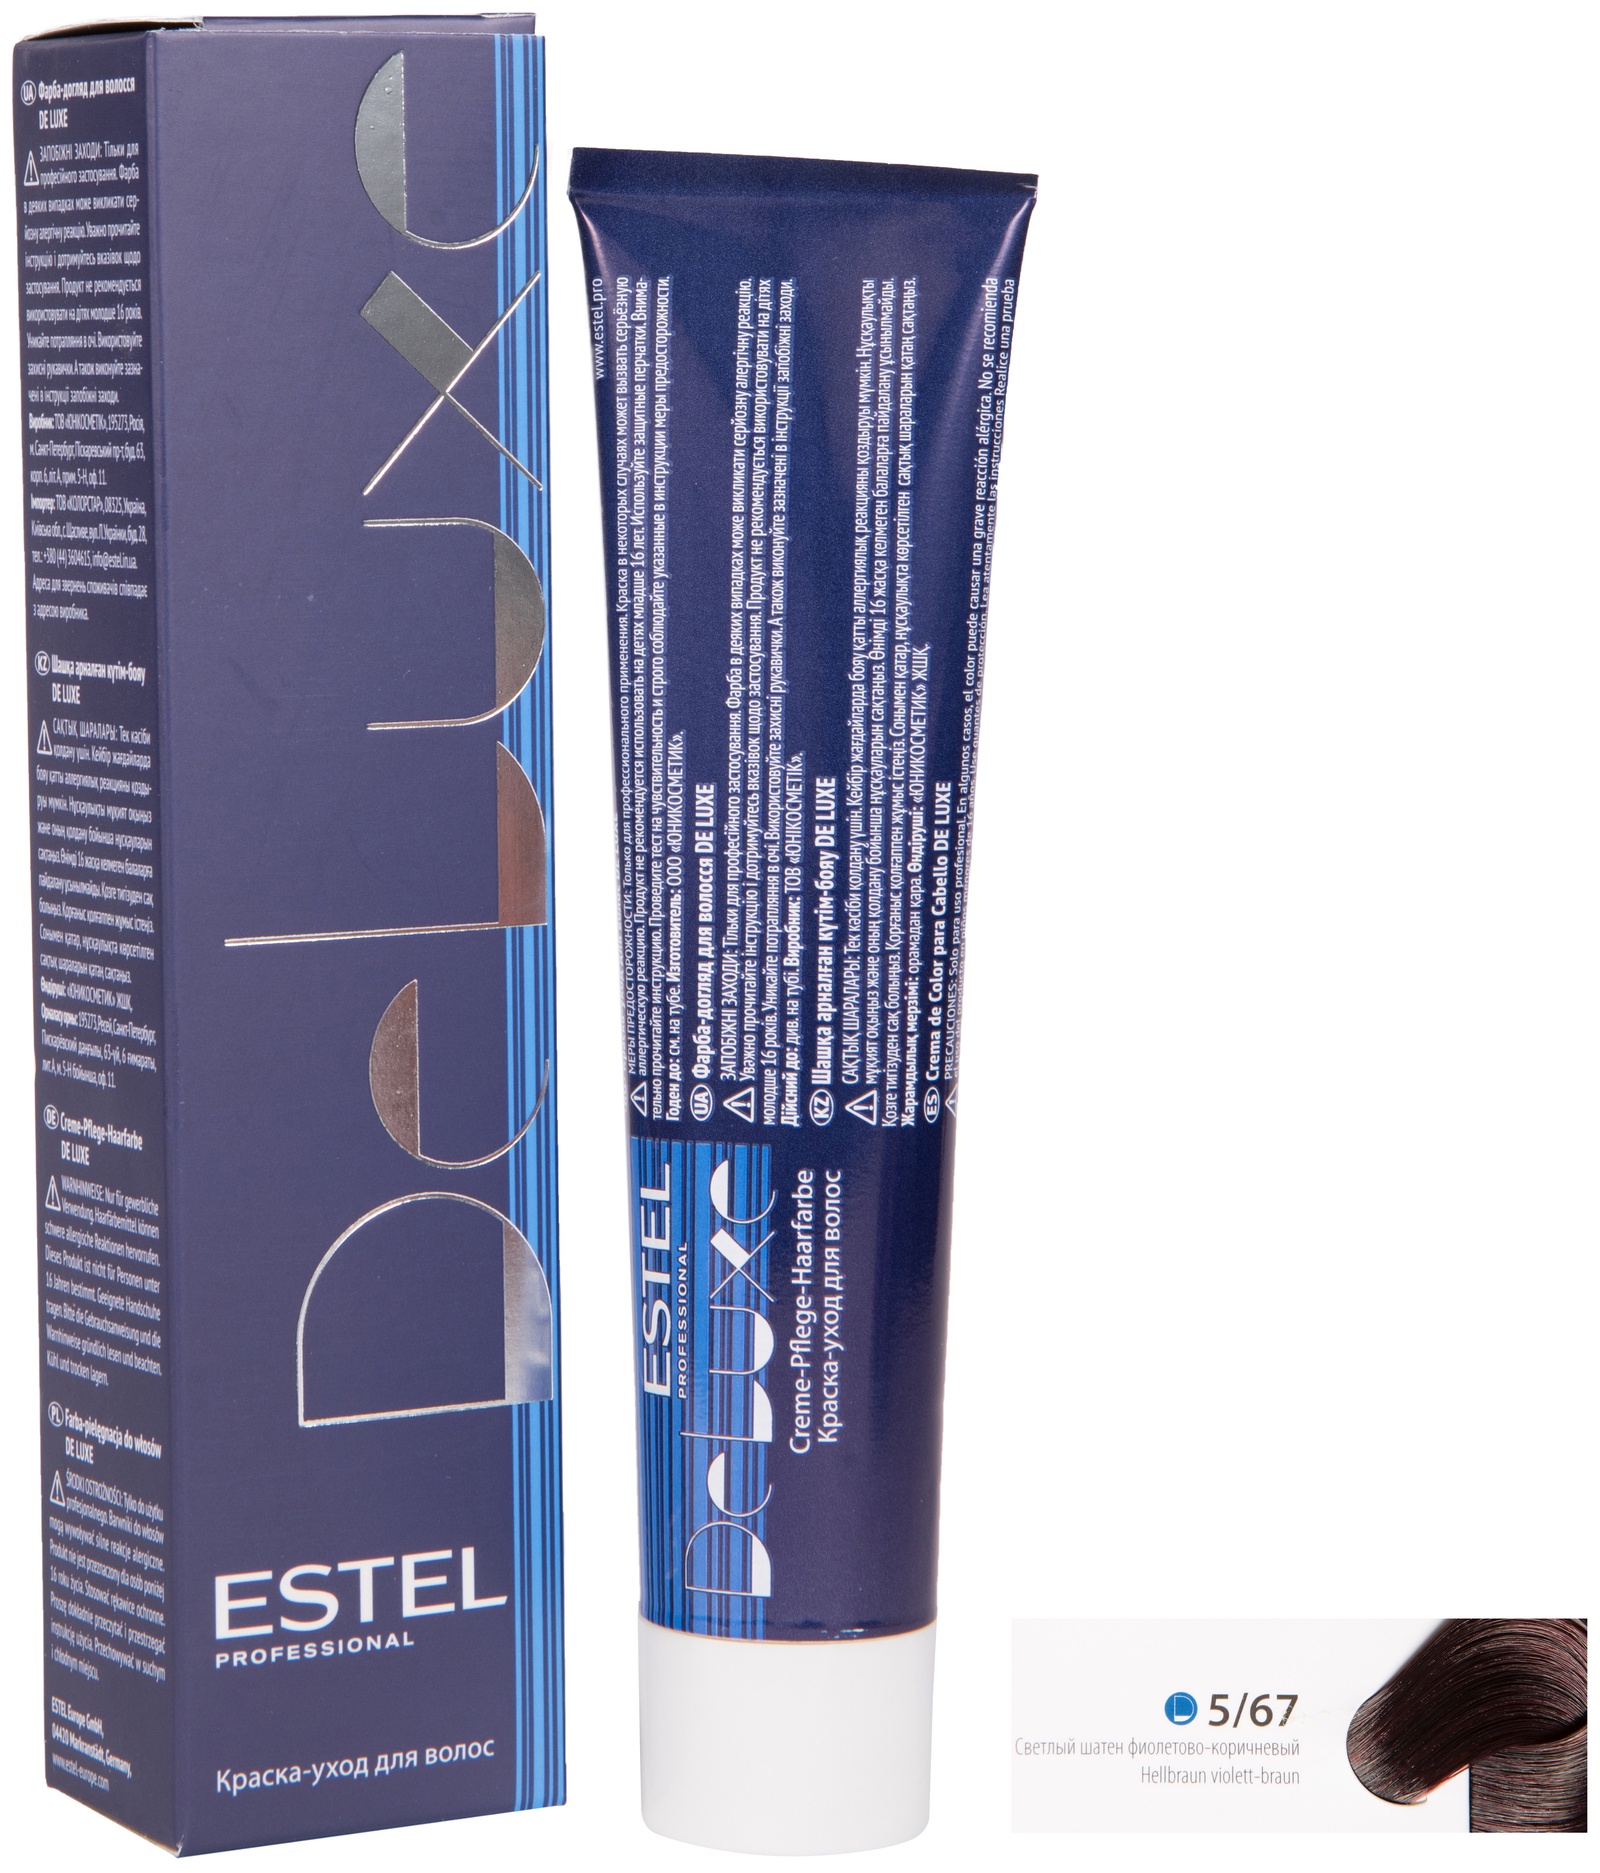 Краска для волос ESTEL PROFESSIONAL 5/67 DE LUXE краска-уход для окрашивания волос, светлый шатен фиолетово-коричневый 60 мл